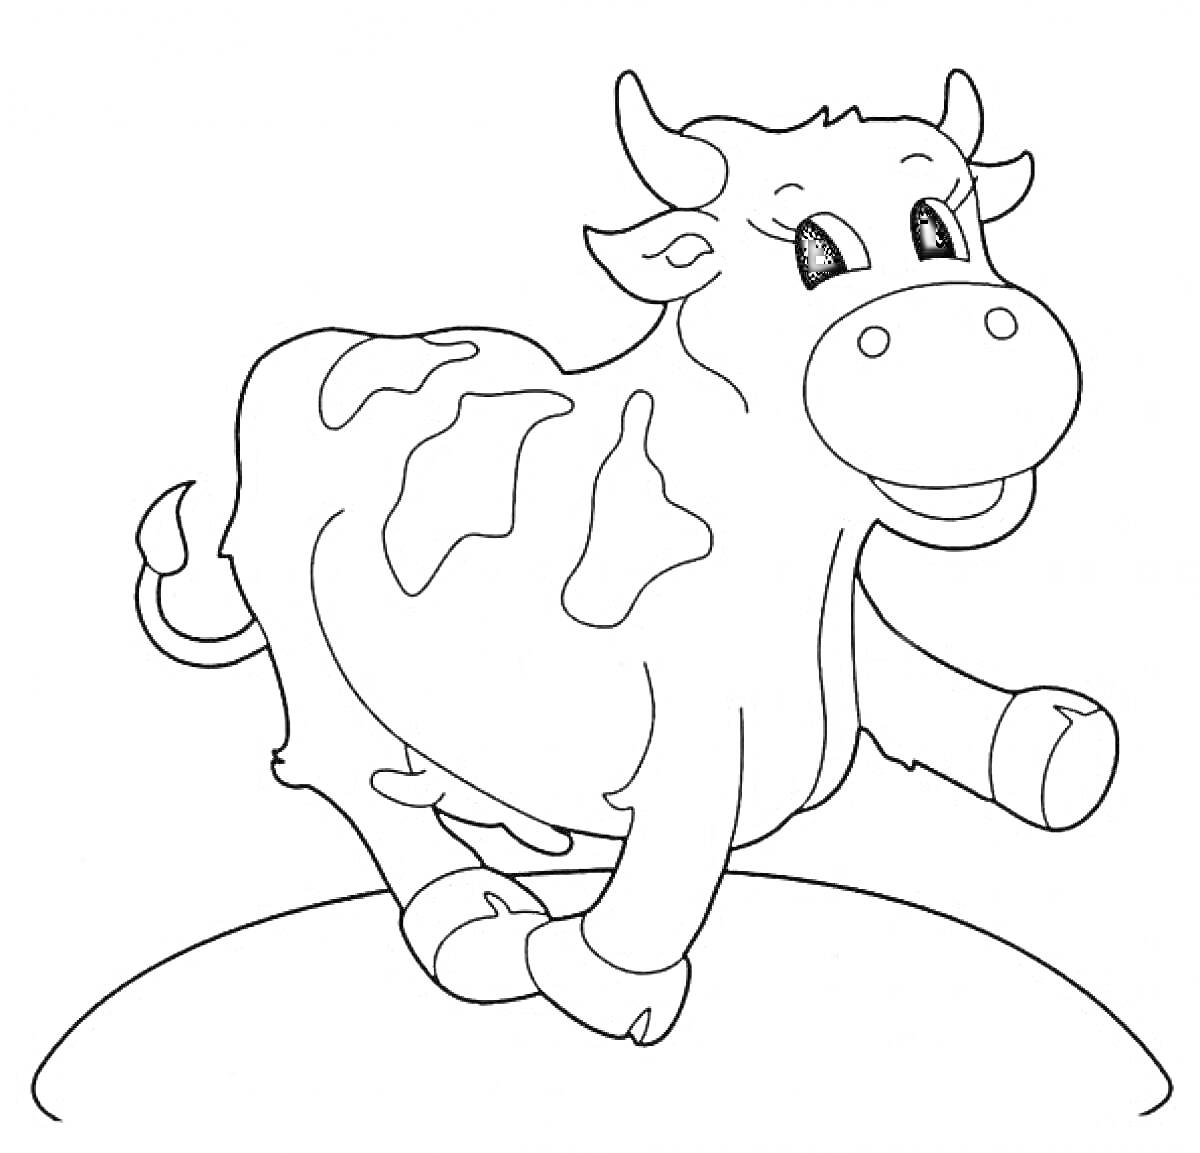 Раскраска Корова на земле с пятнами, улыбкой и поднятой ногой